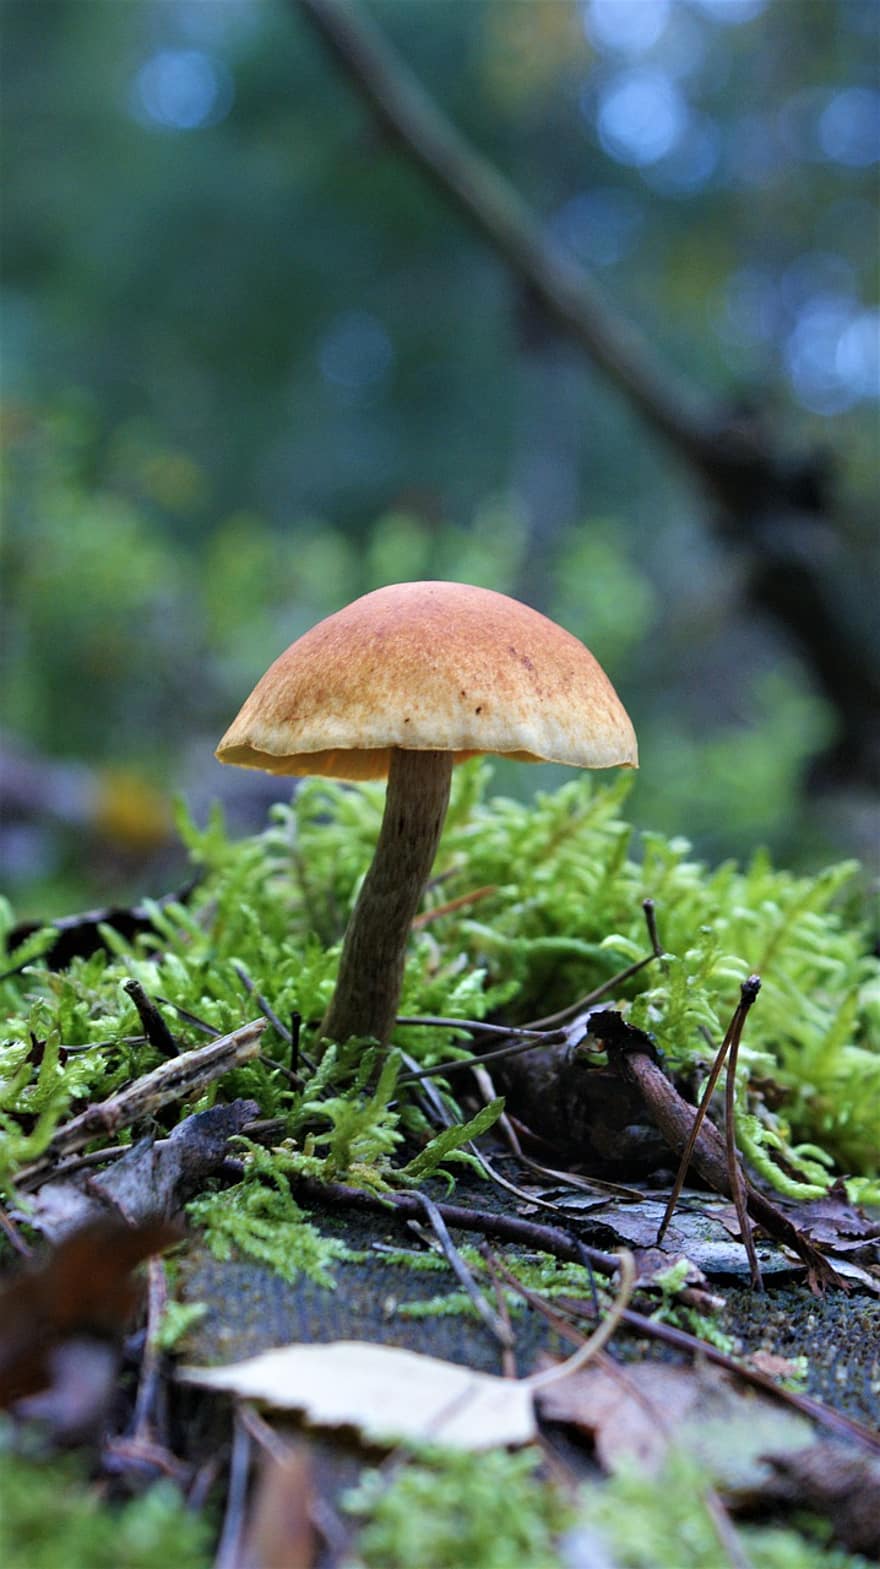 гриб, дикий гриб, суперечка, губка, грибок, плодове тіло, Грибні диски, види грибів, Види грибів, ліс, лісова підлога